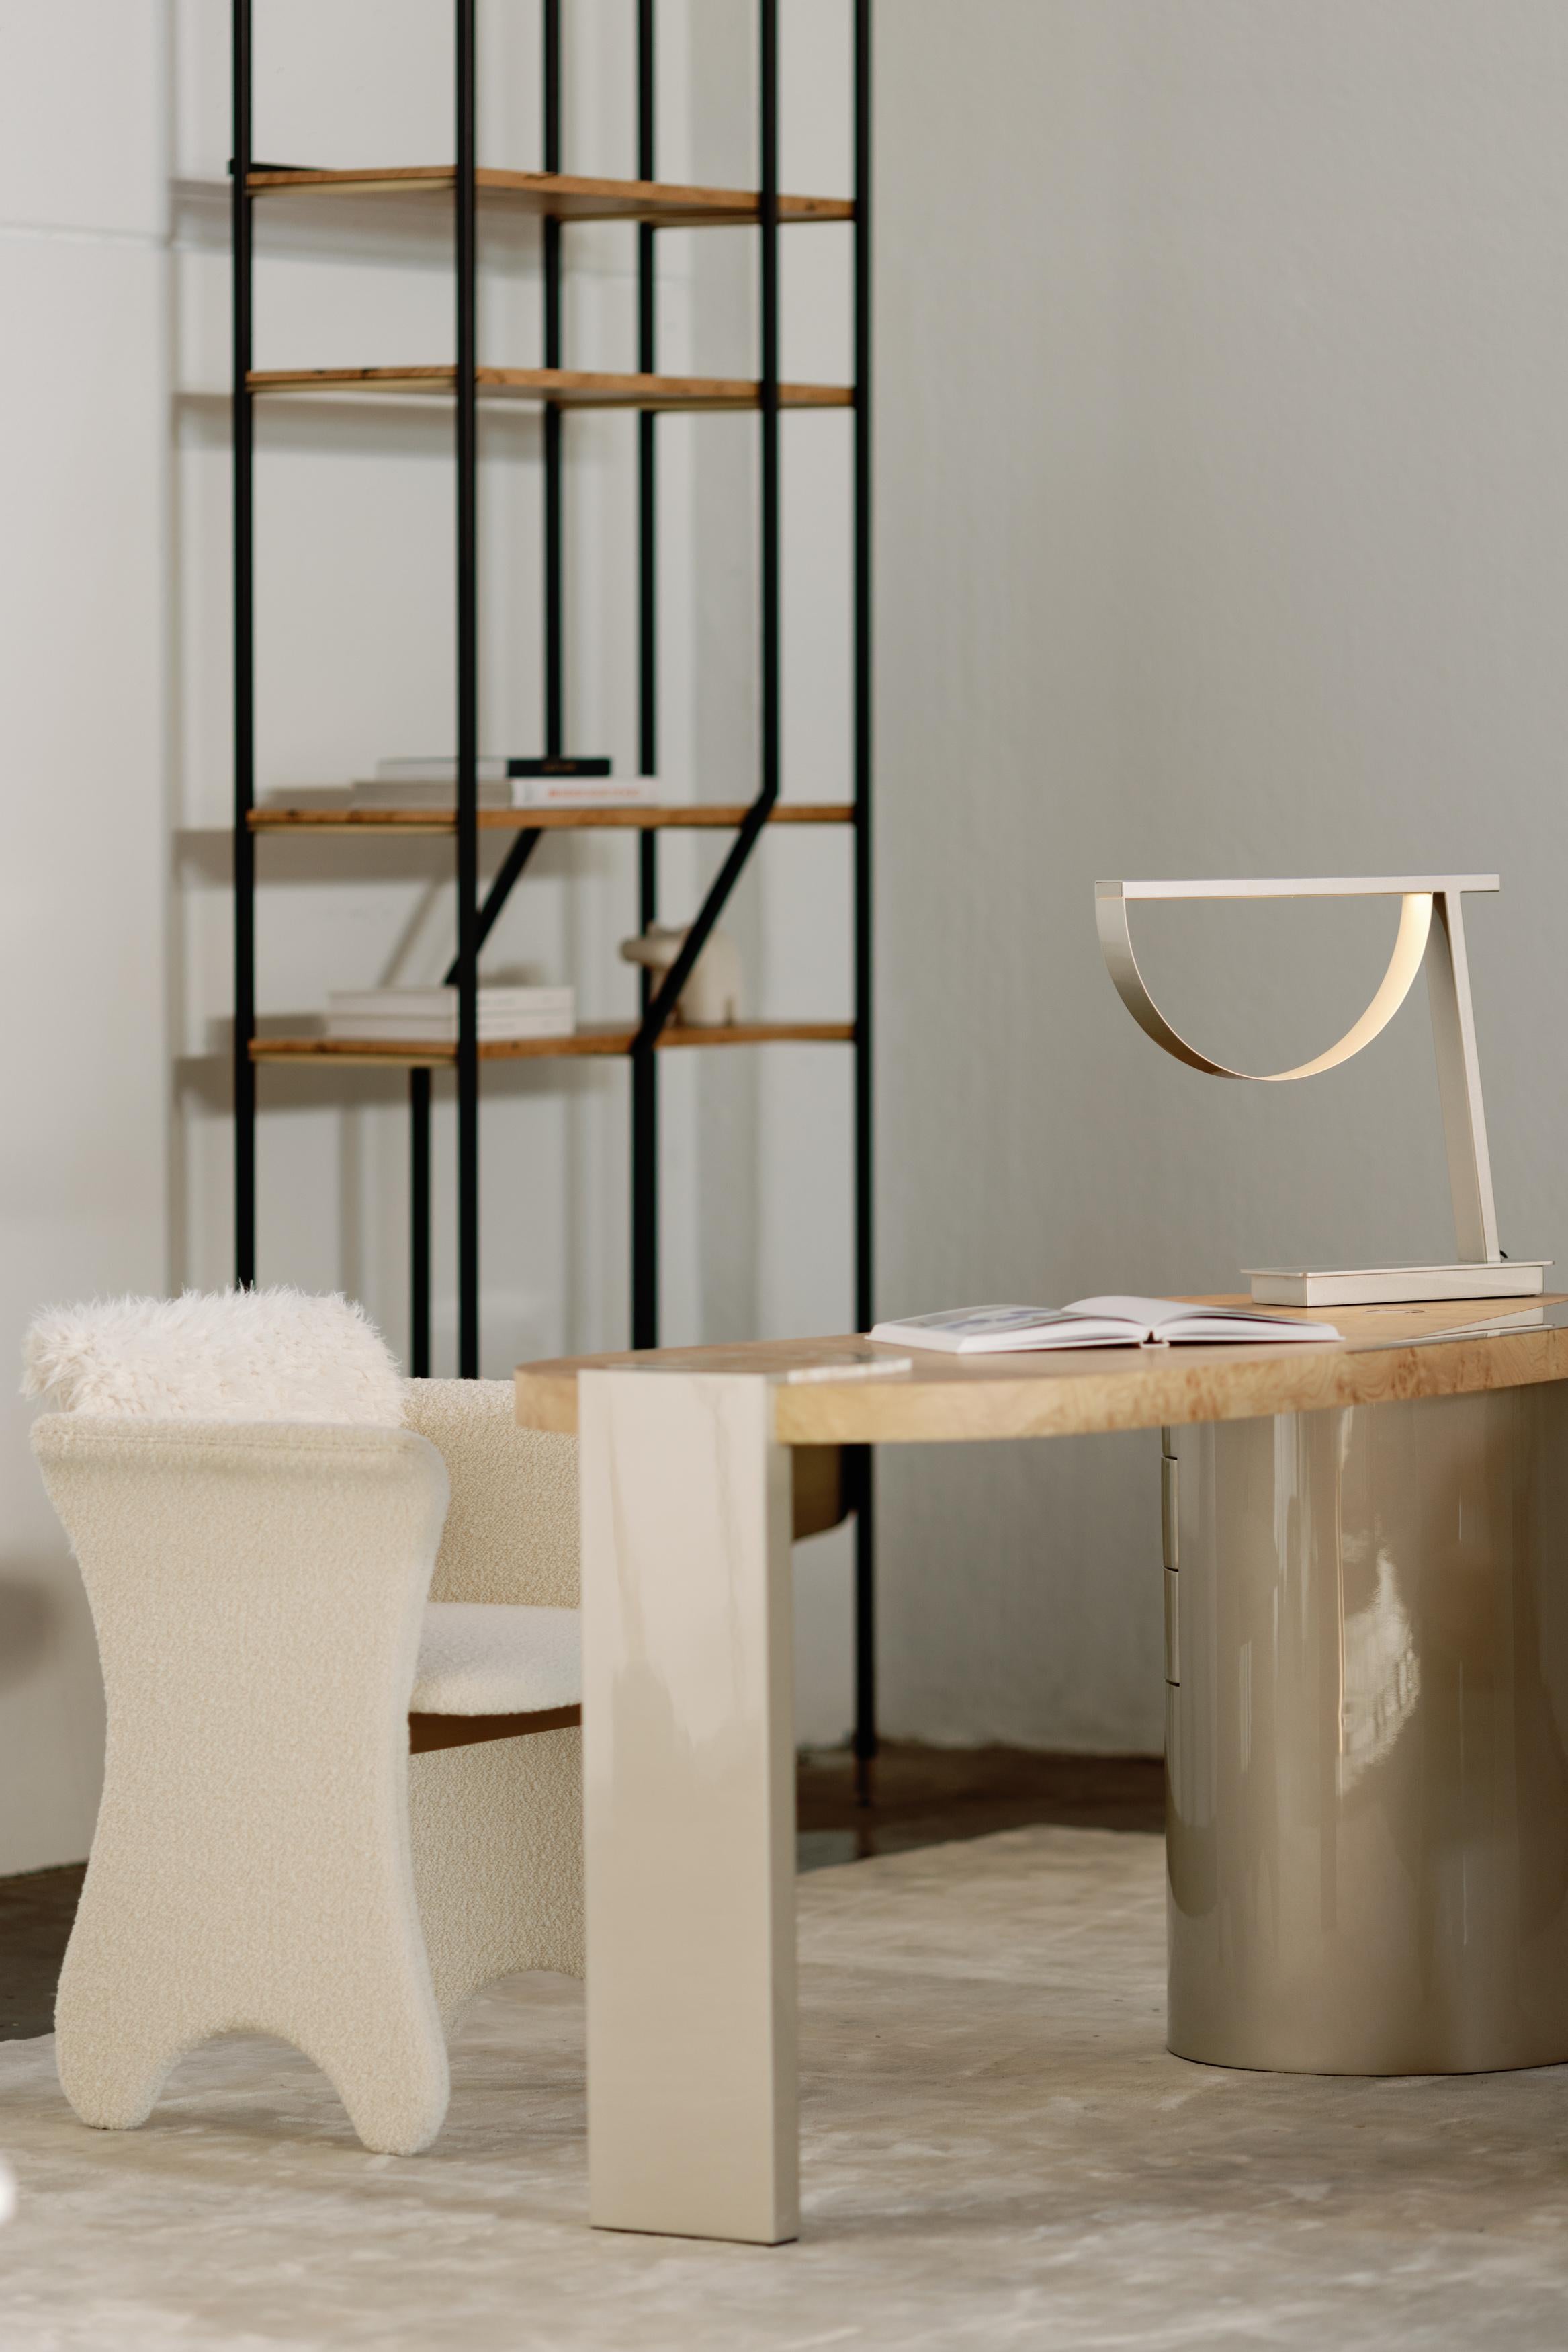 Kabellose Tischleuchte Lima, Collection'S Contemporary, handgefertigt in Portugal - Europa von Greenapple.

Die kabellose Tischleuchte Lima definiert die Begriffe Funktionalität und Stil in der zeitgenössischen Innenarchitektur mit unvergleichlicher